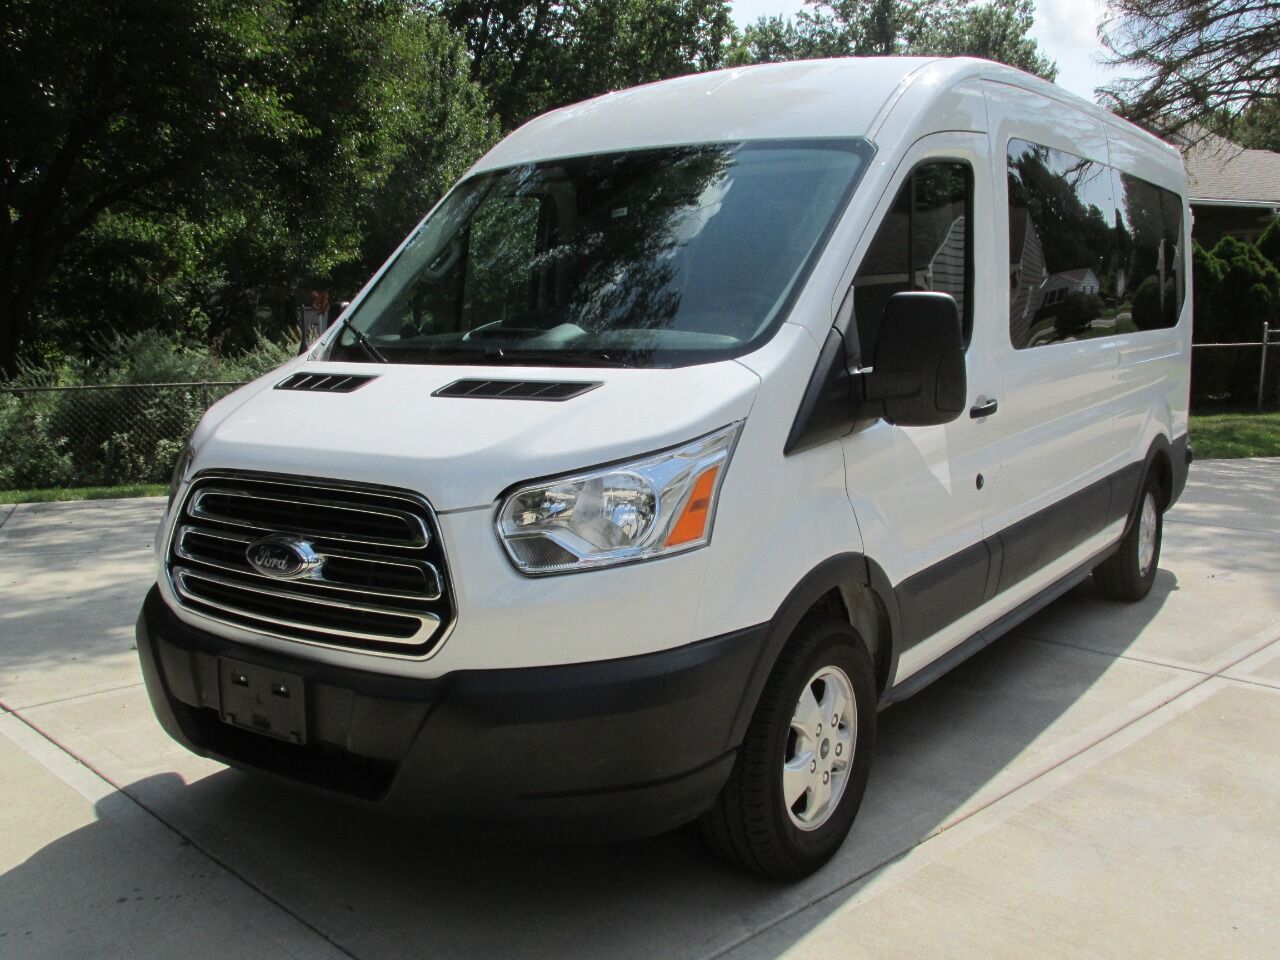 conversion camper vans for sale by owner